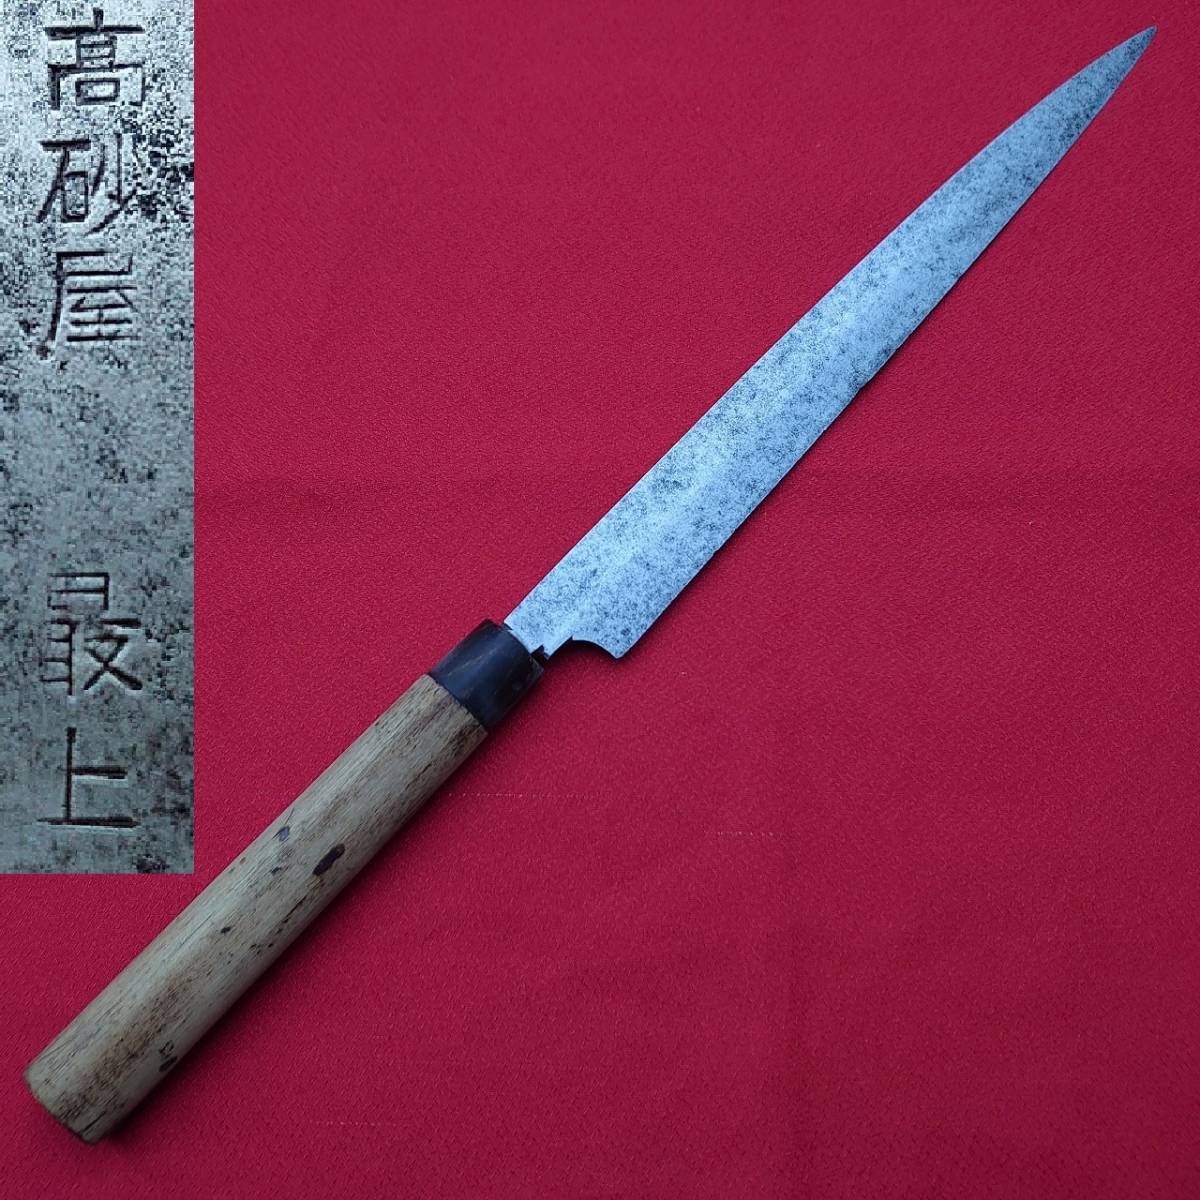 24956円 手数料安い コトブキ 高炭素 日本製 柳刺身ナイフ 210mm シルバー